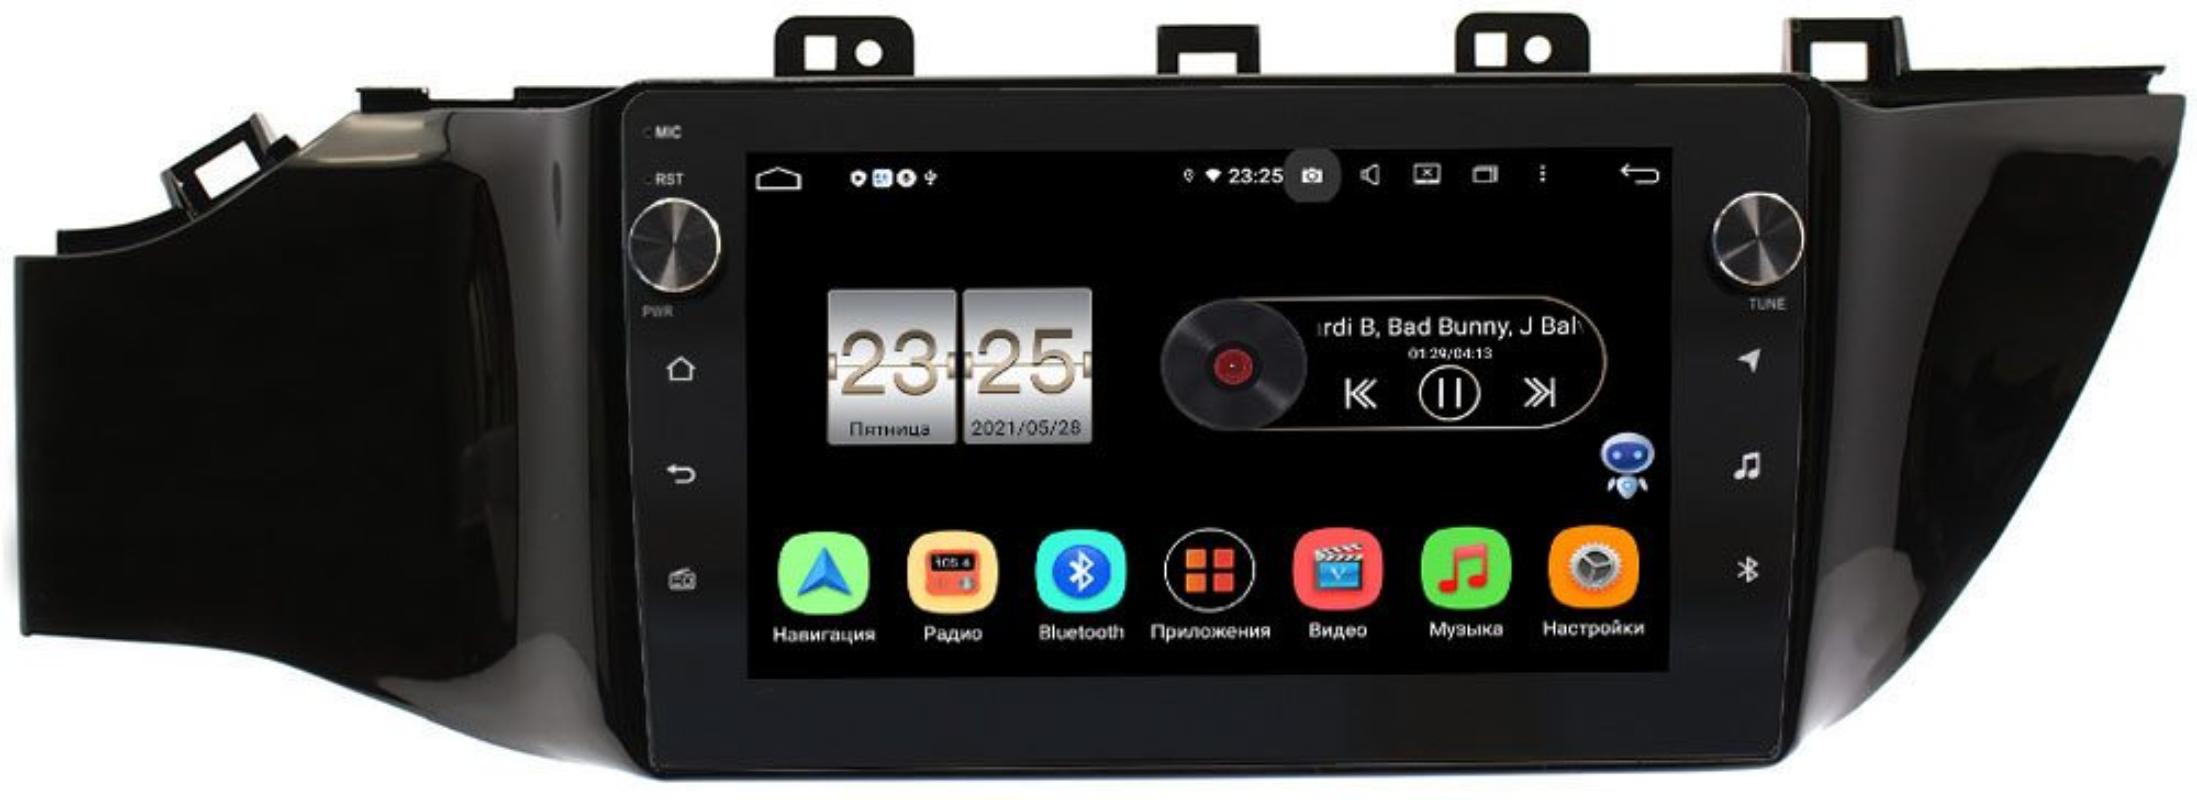 Штатная магнитола LeTrun BPX409-9078 Android 10 (4/32, DSP, IPS, с голосовым ассистентом, с крутилками) (без кнопки) для Kia Rio IV, Rio IV X-Line 2017-2019 (+ Камера заднего вида в подарок!)